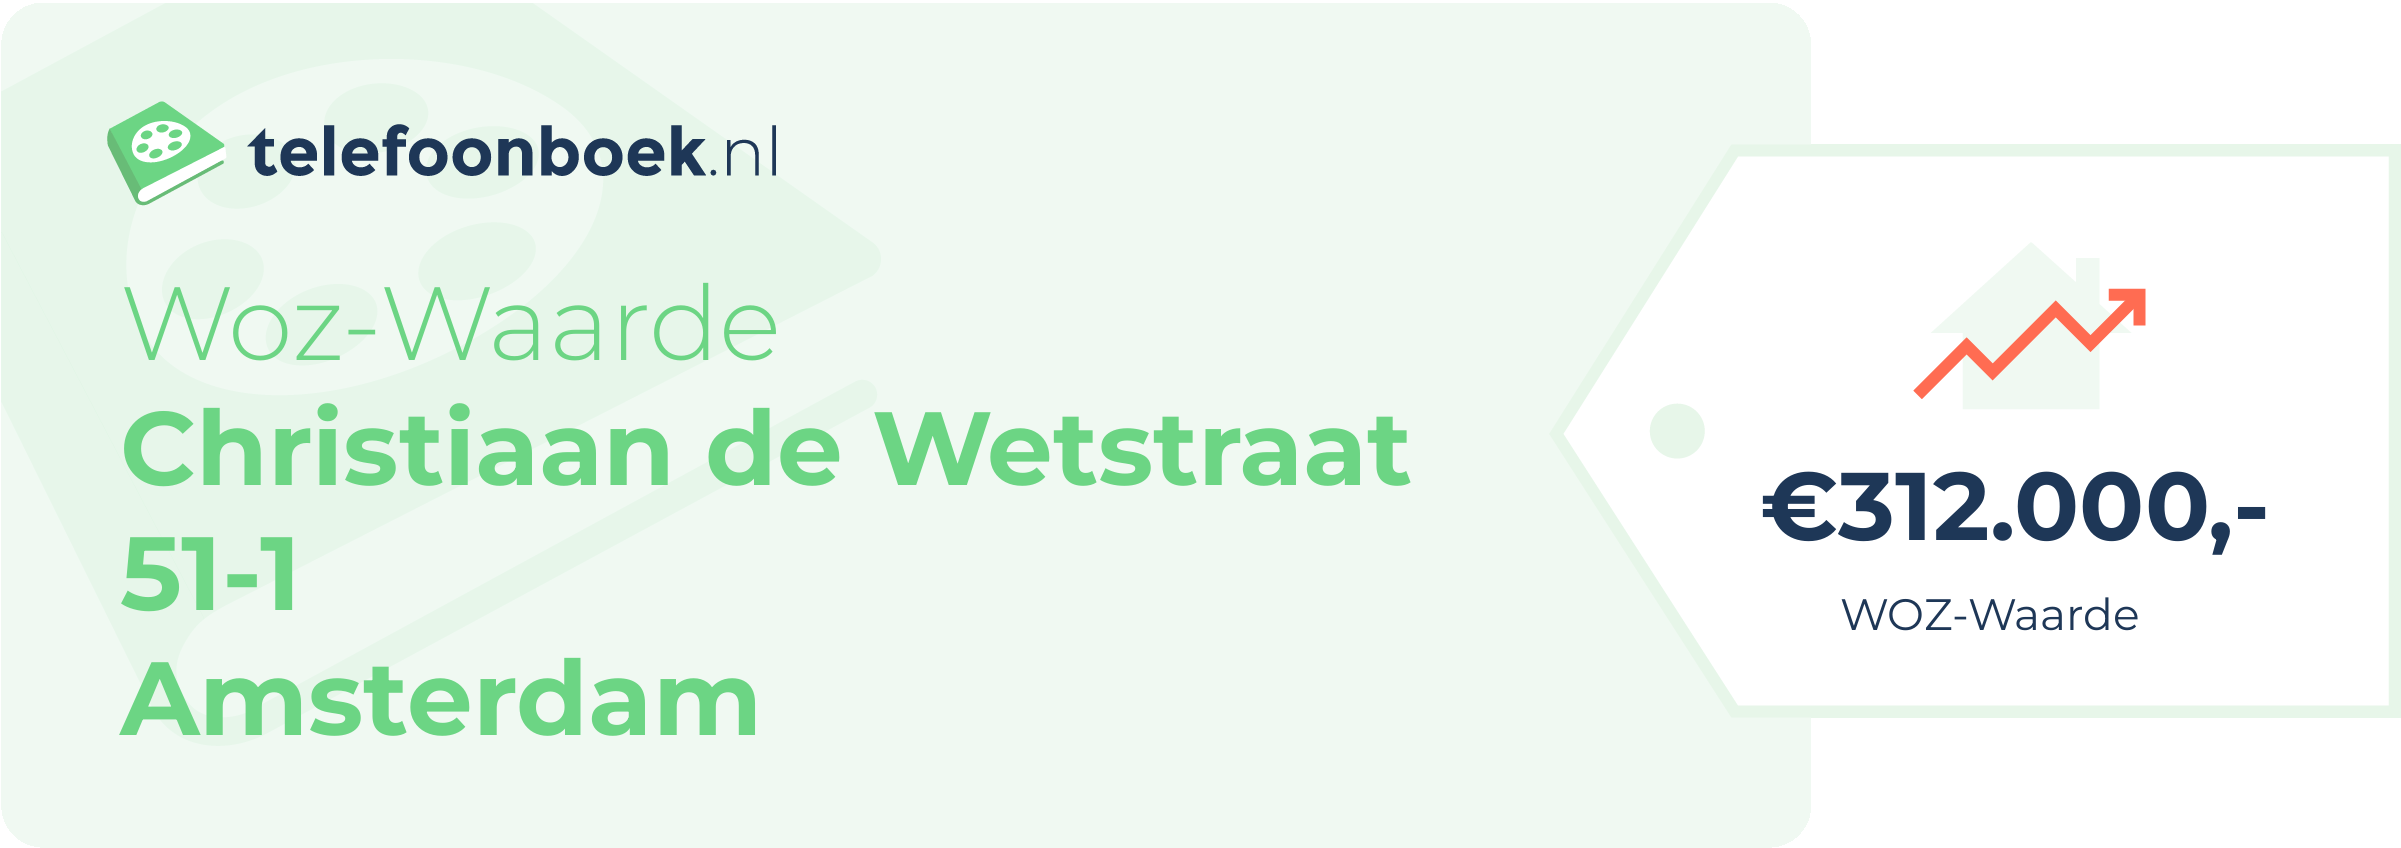 WOZ-waarde Christiaan De Wetstraat 51-1 Amsterdam